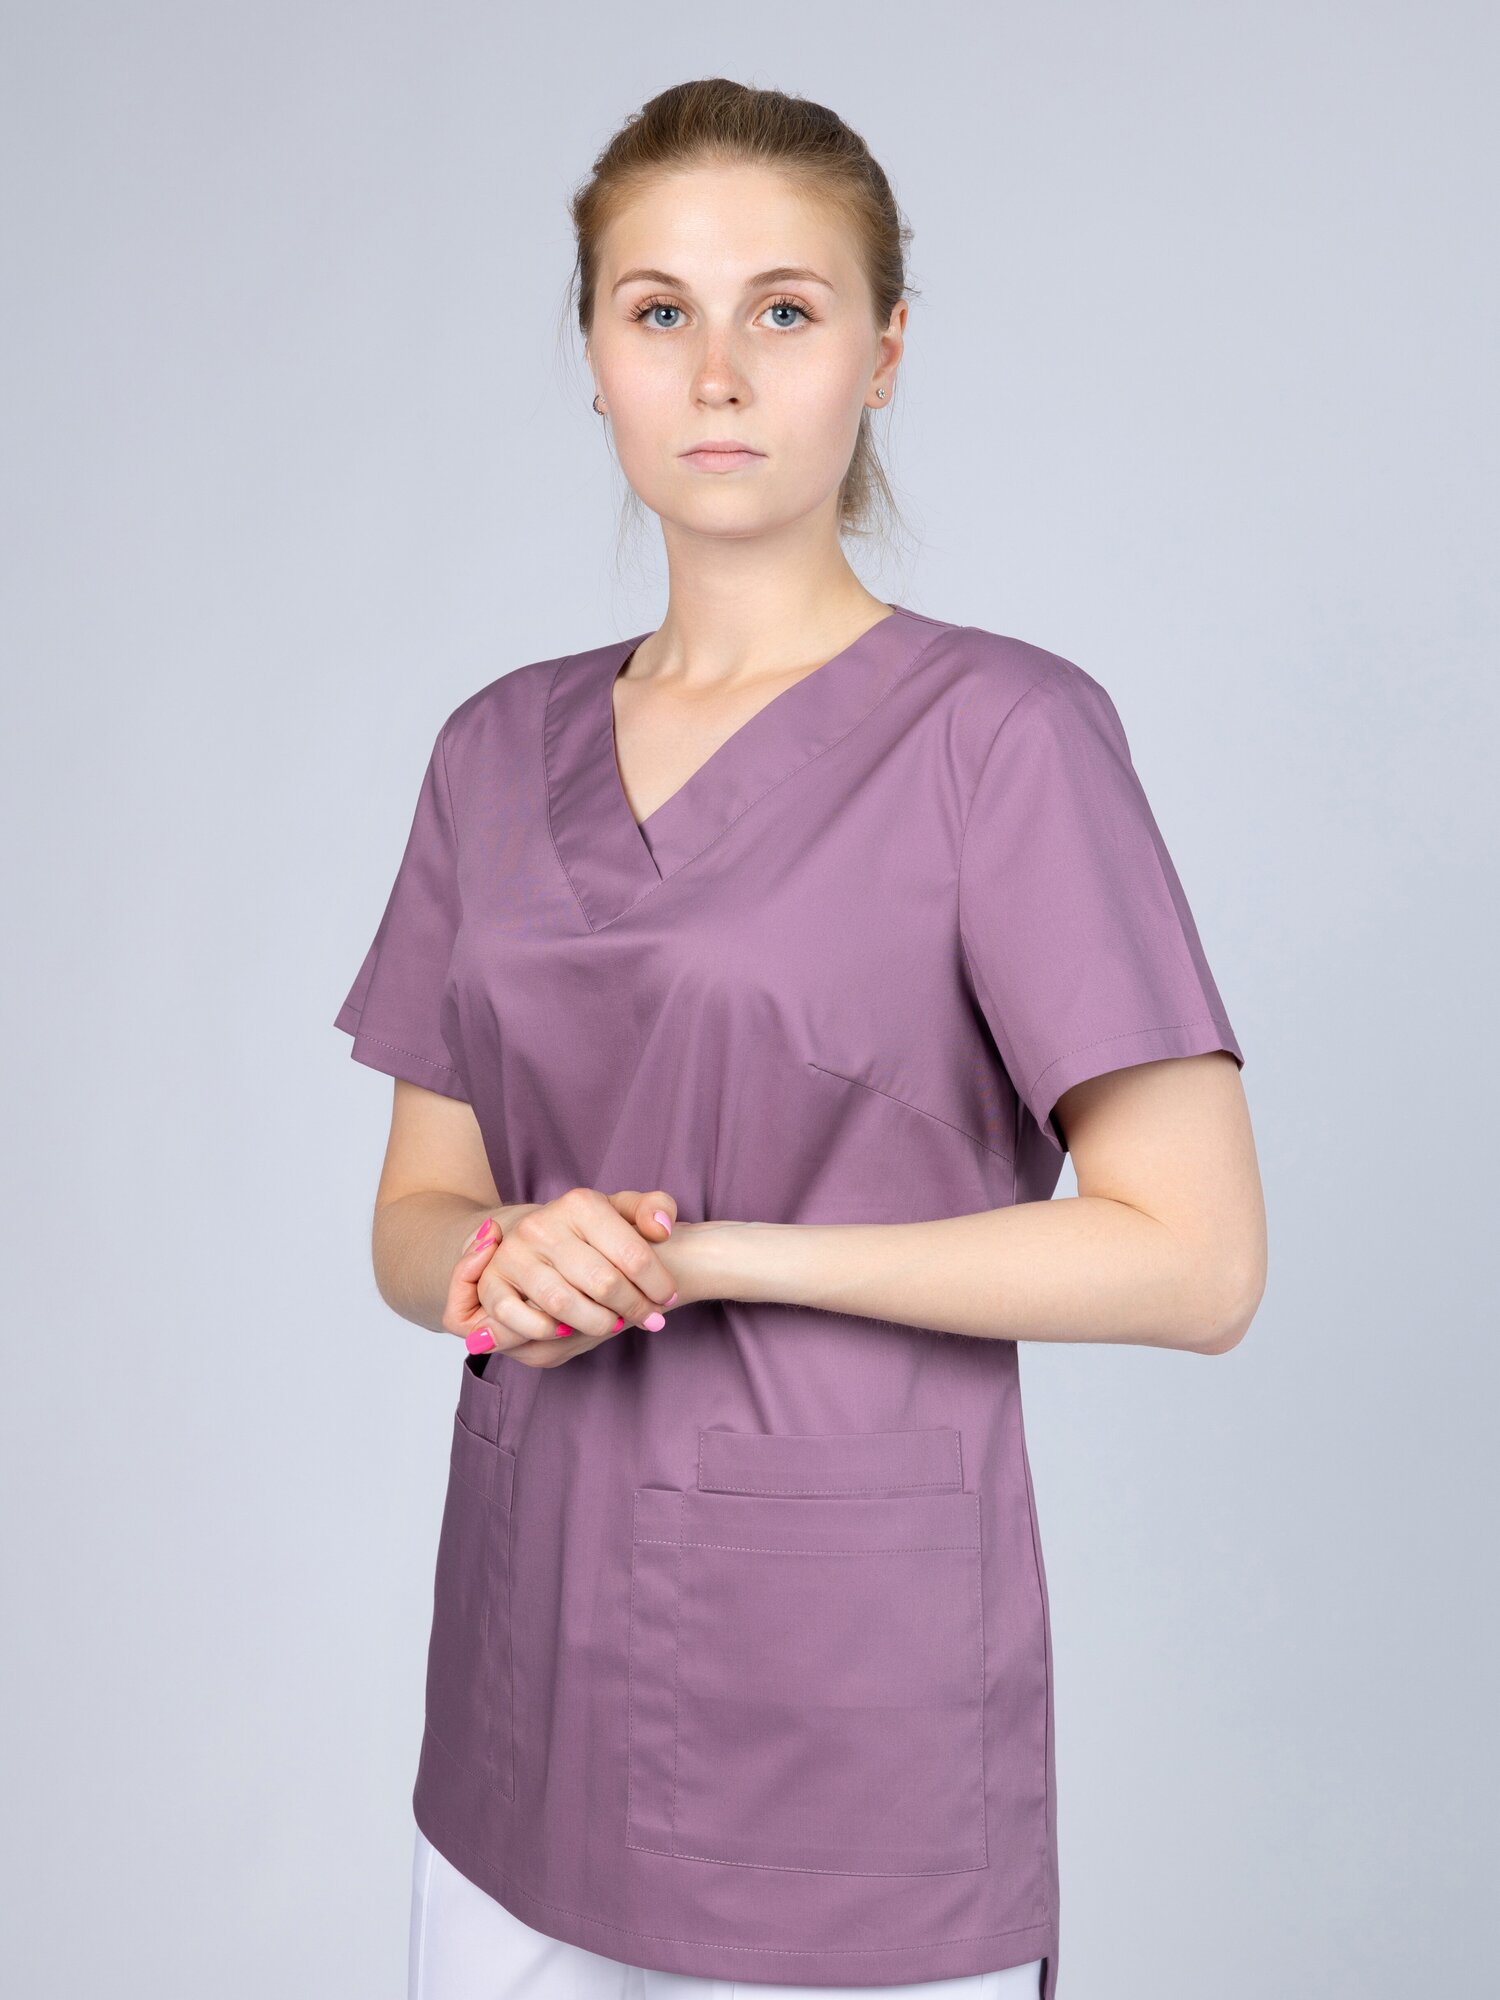 Премиальная медицинская одежда/Медицинский топ с карманами сиреневый 44 размера